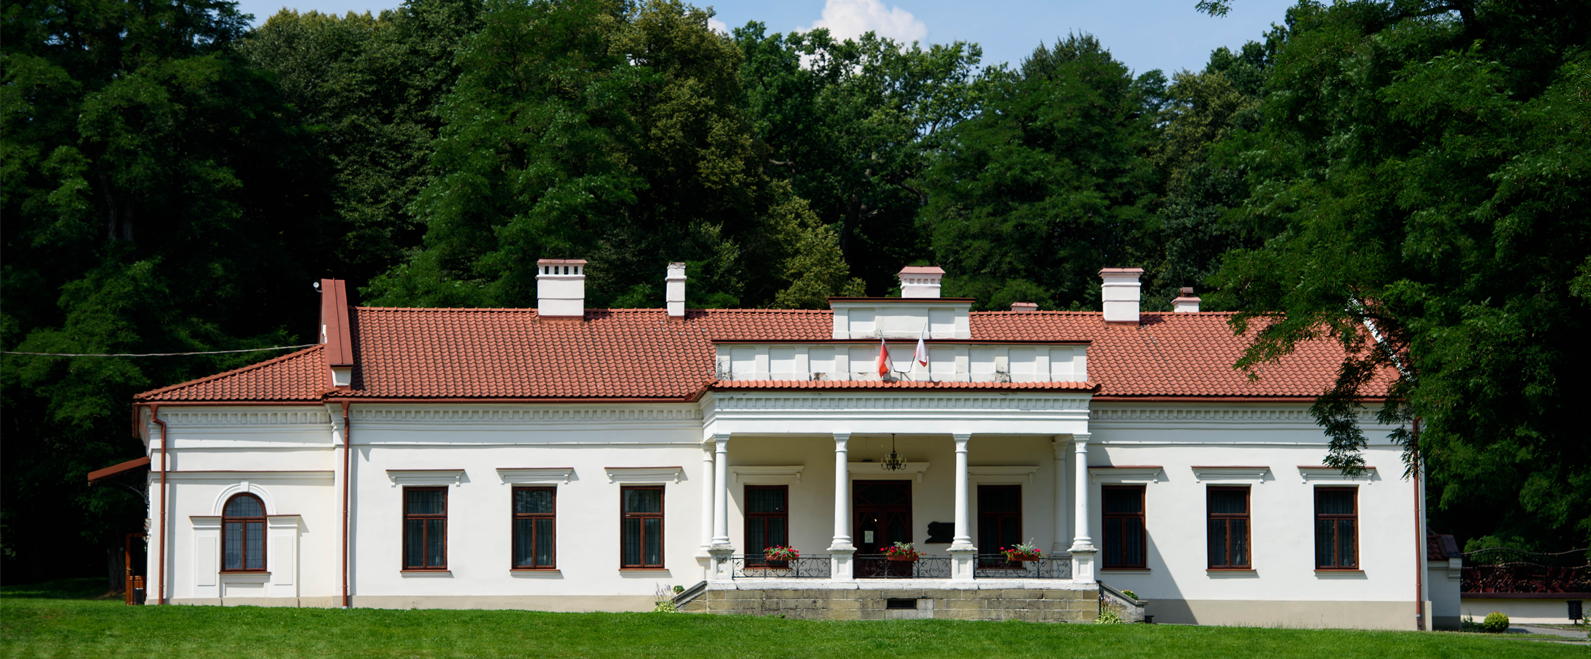 Grupa Azoty provides support to Paderewski Centre in Kąśna Dolna